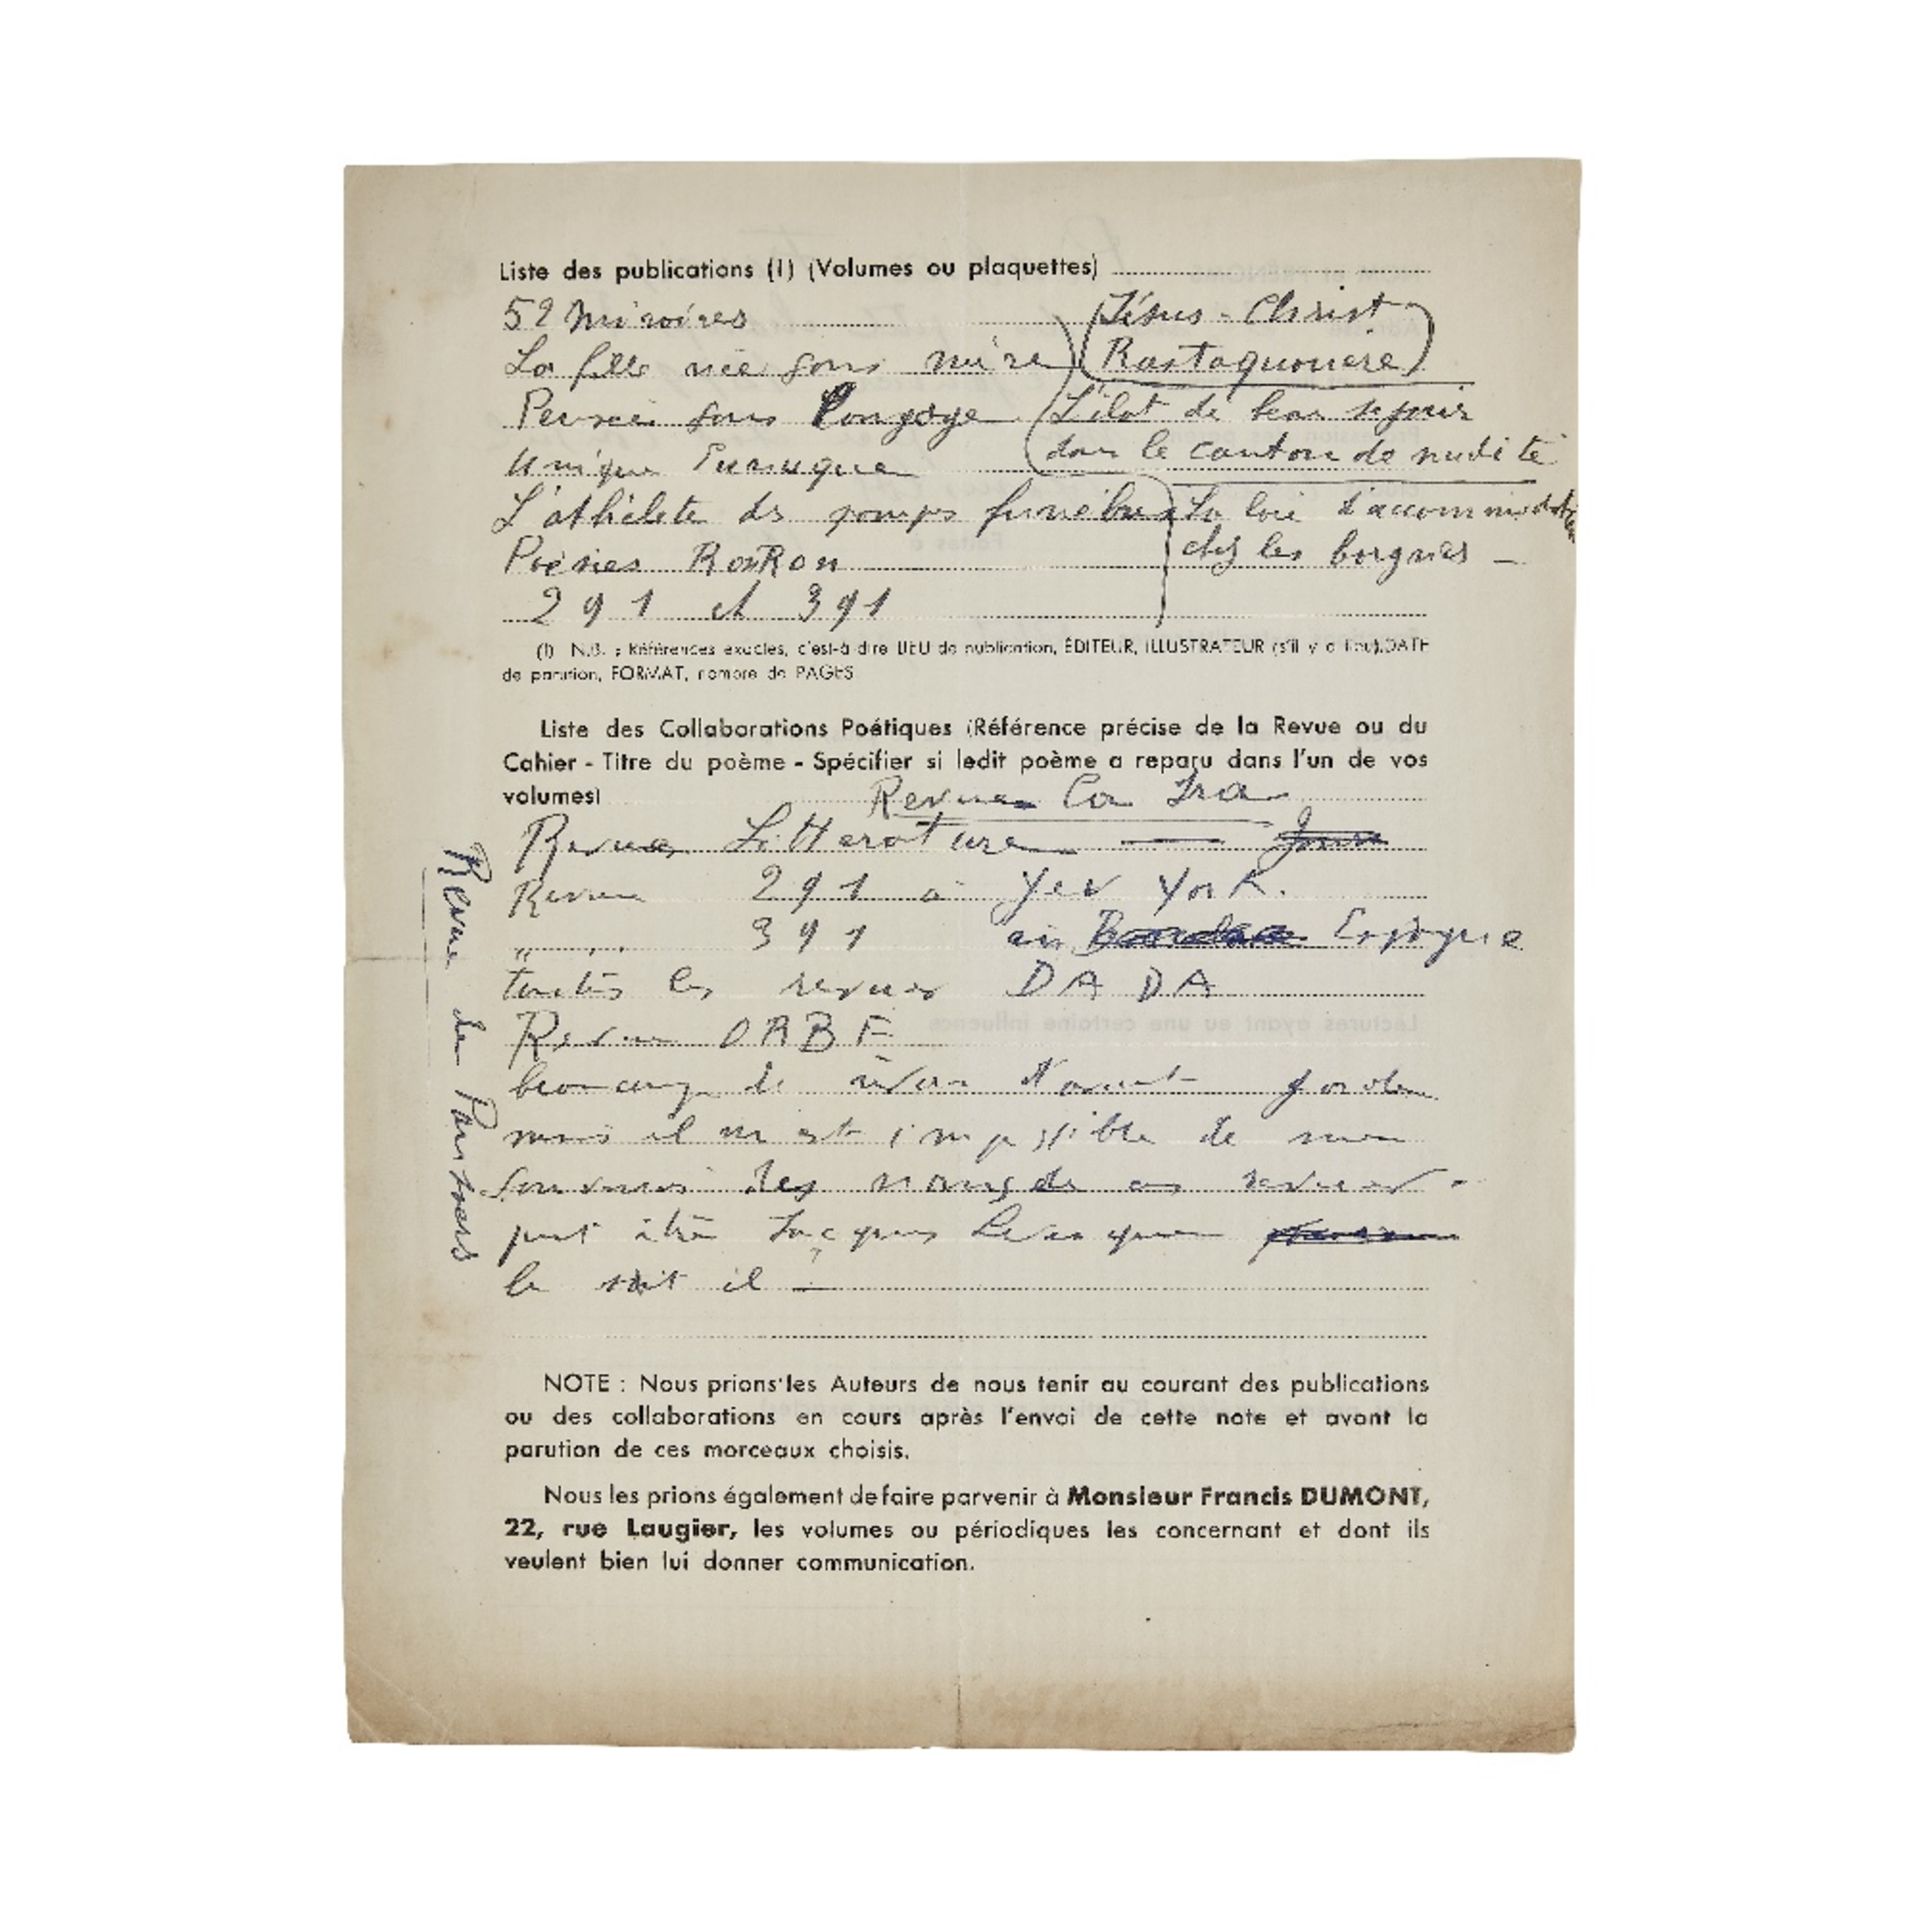 FRANCIS PICABIA (1879-1953) R&#201;PONSES AUTOGRAPHES AU QUESTIONNAIRE DE FRANCIS DUMONT [1949]...